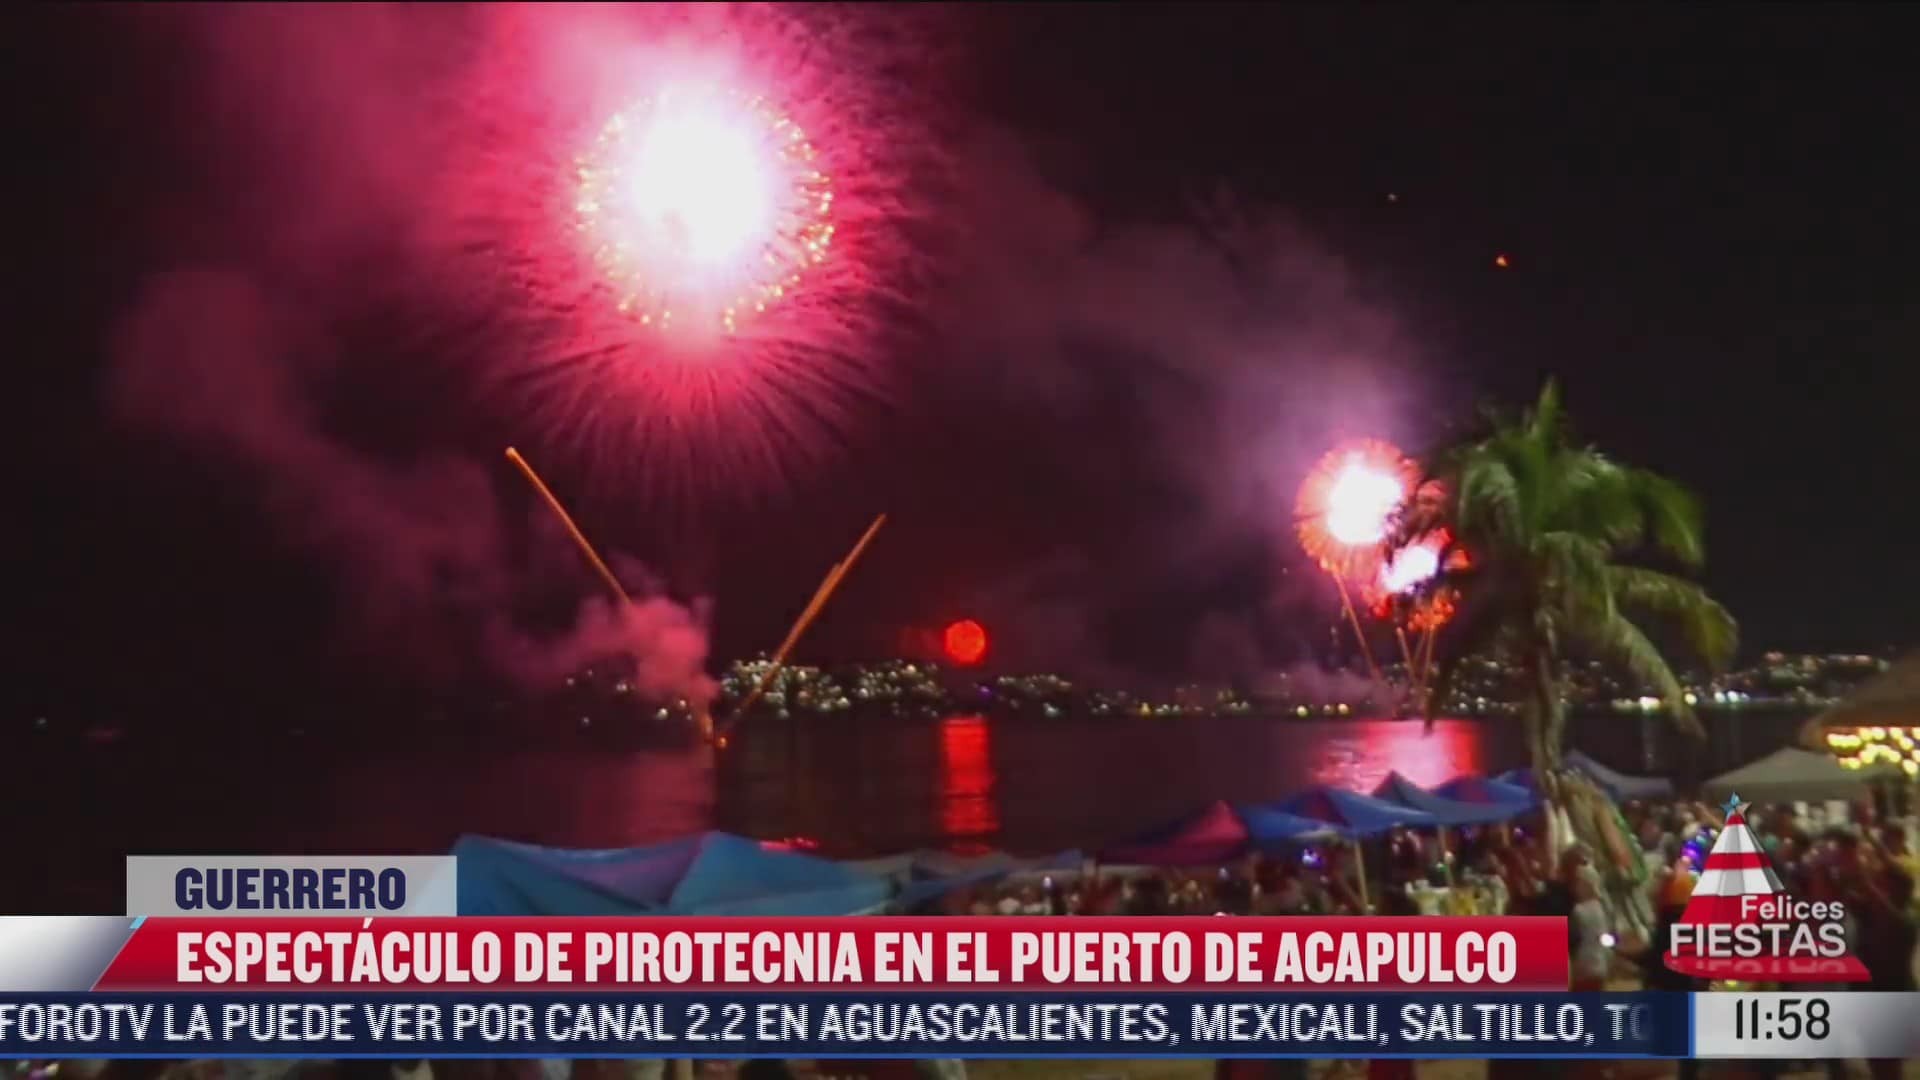 turistas disfrutaron del espectaculo de pirotecnia en acapulco para recibir el